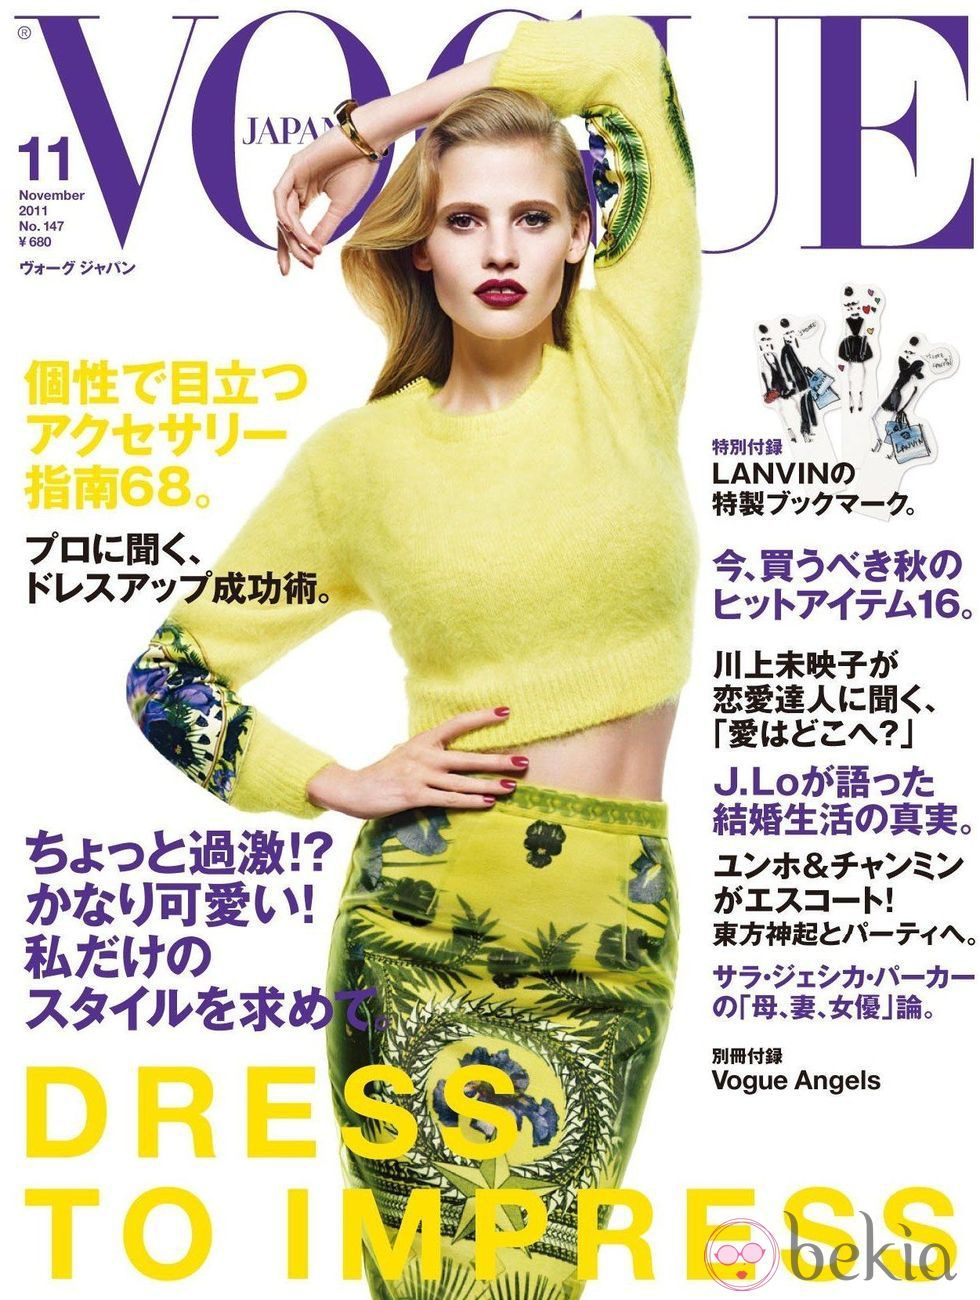 Lara Stone, portada de Vogue Japón en octubre de 2011